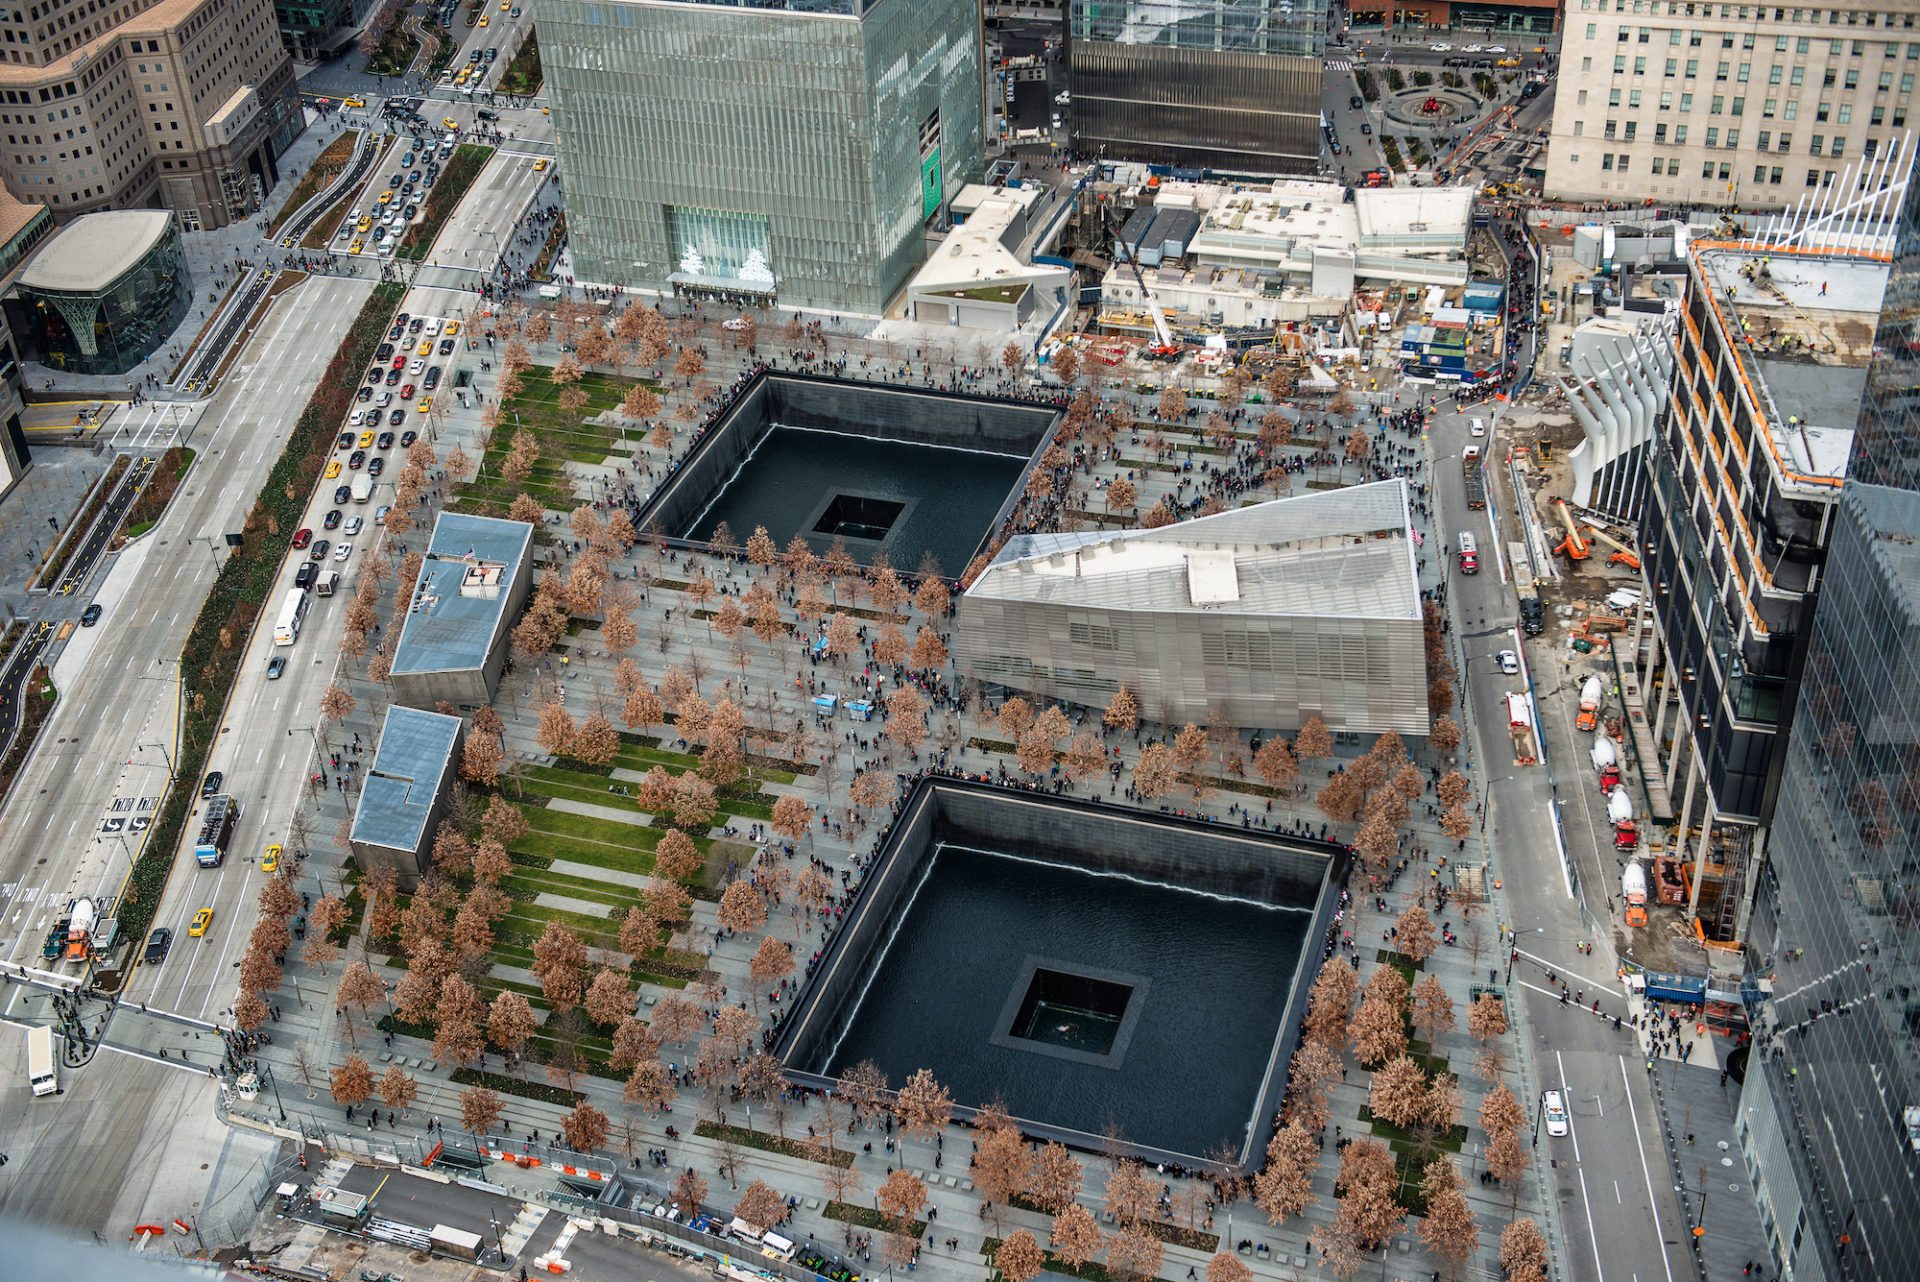 USA, The National 9/11 Memorial Museum